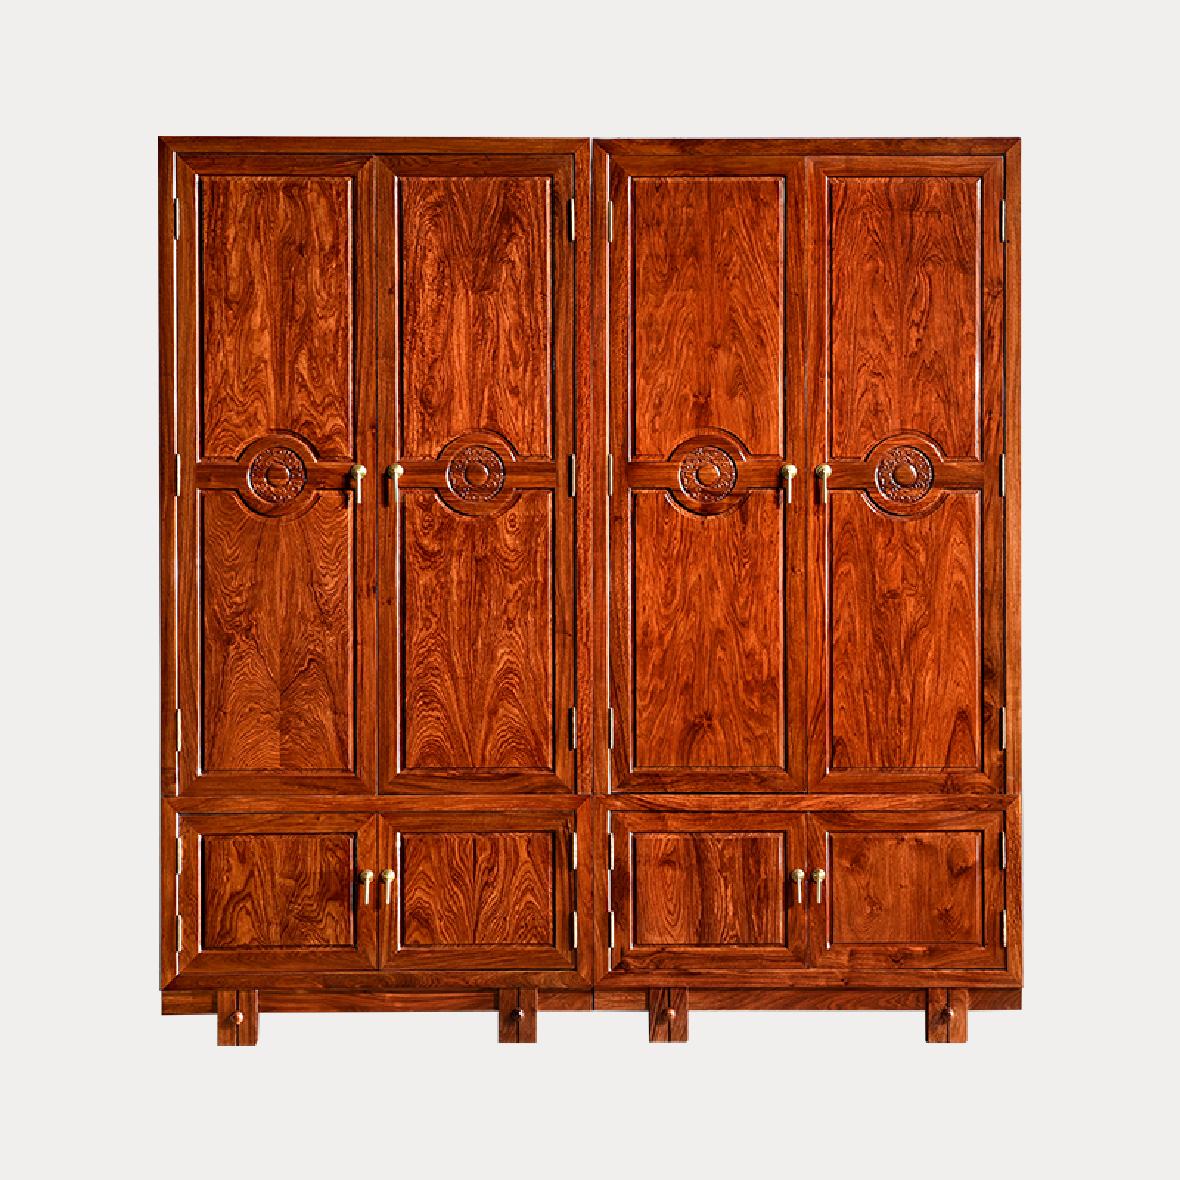 实木刺猬紫檀秀江南衣柜家庭实用红木家具